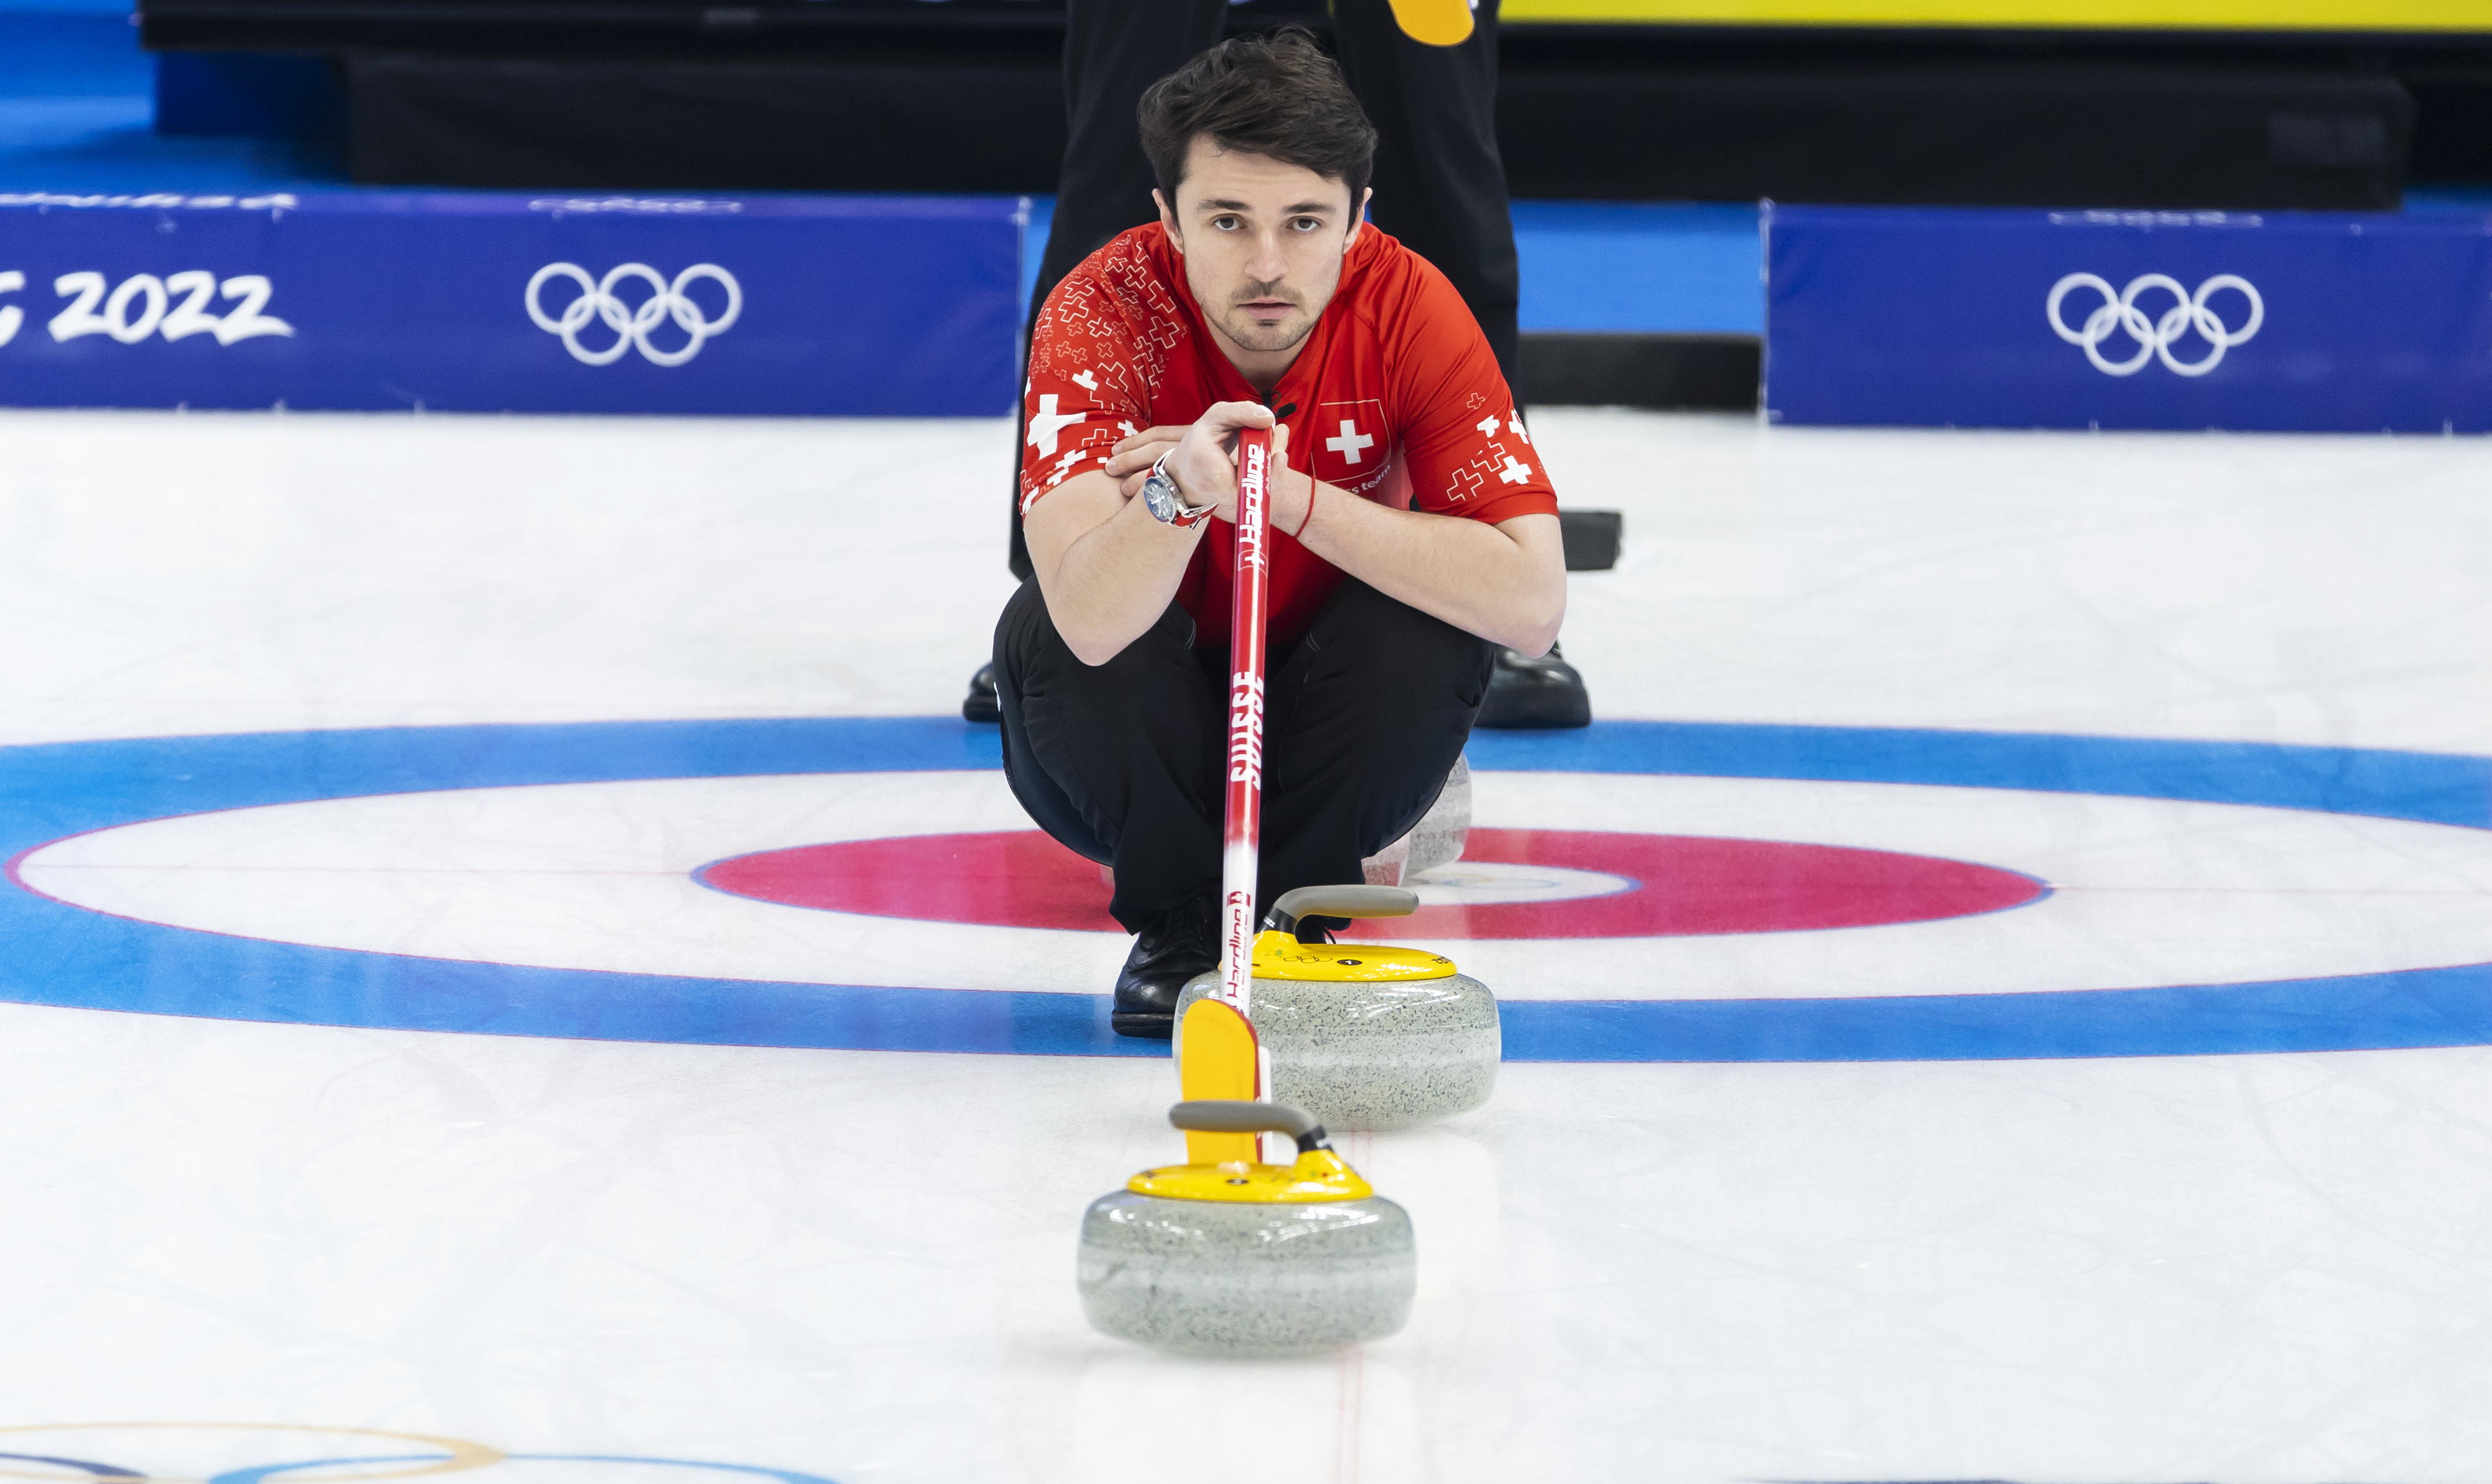 Rapperswil-Jona ist anvisiert: Das olympische Curlingturnier könnte in der Rosenstadt stattfinden. BILD KEYSTONE